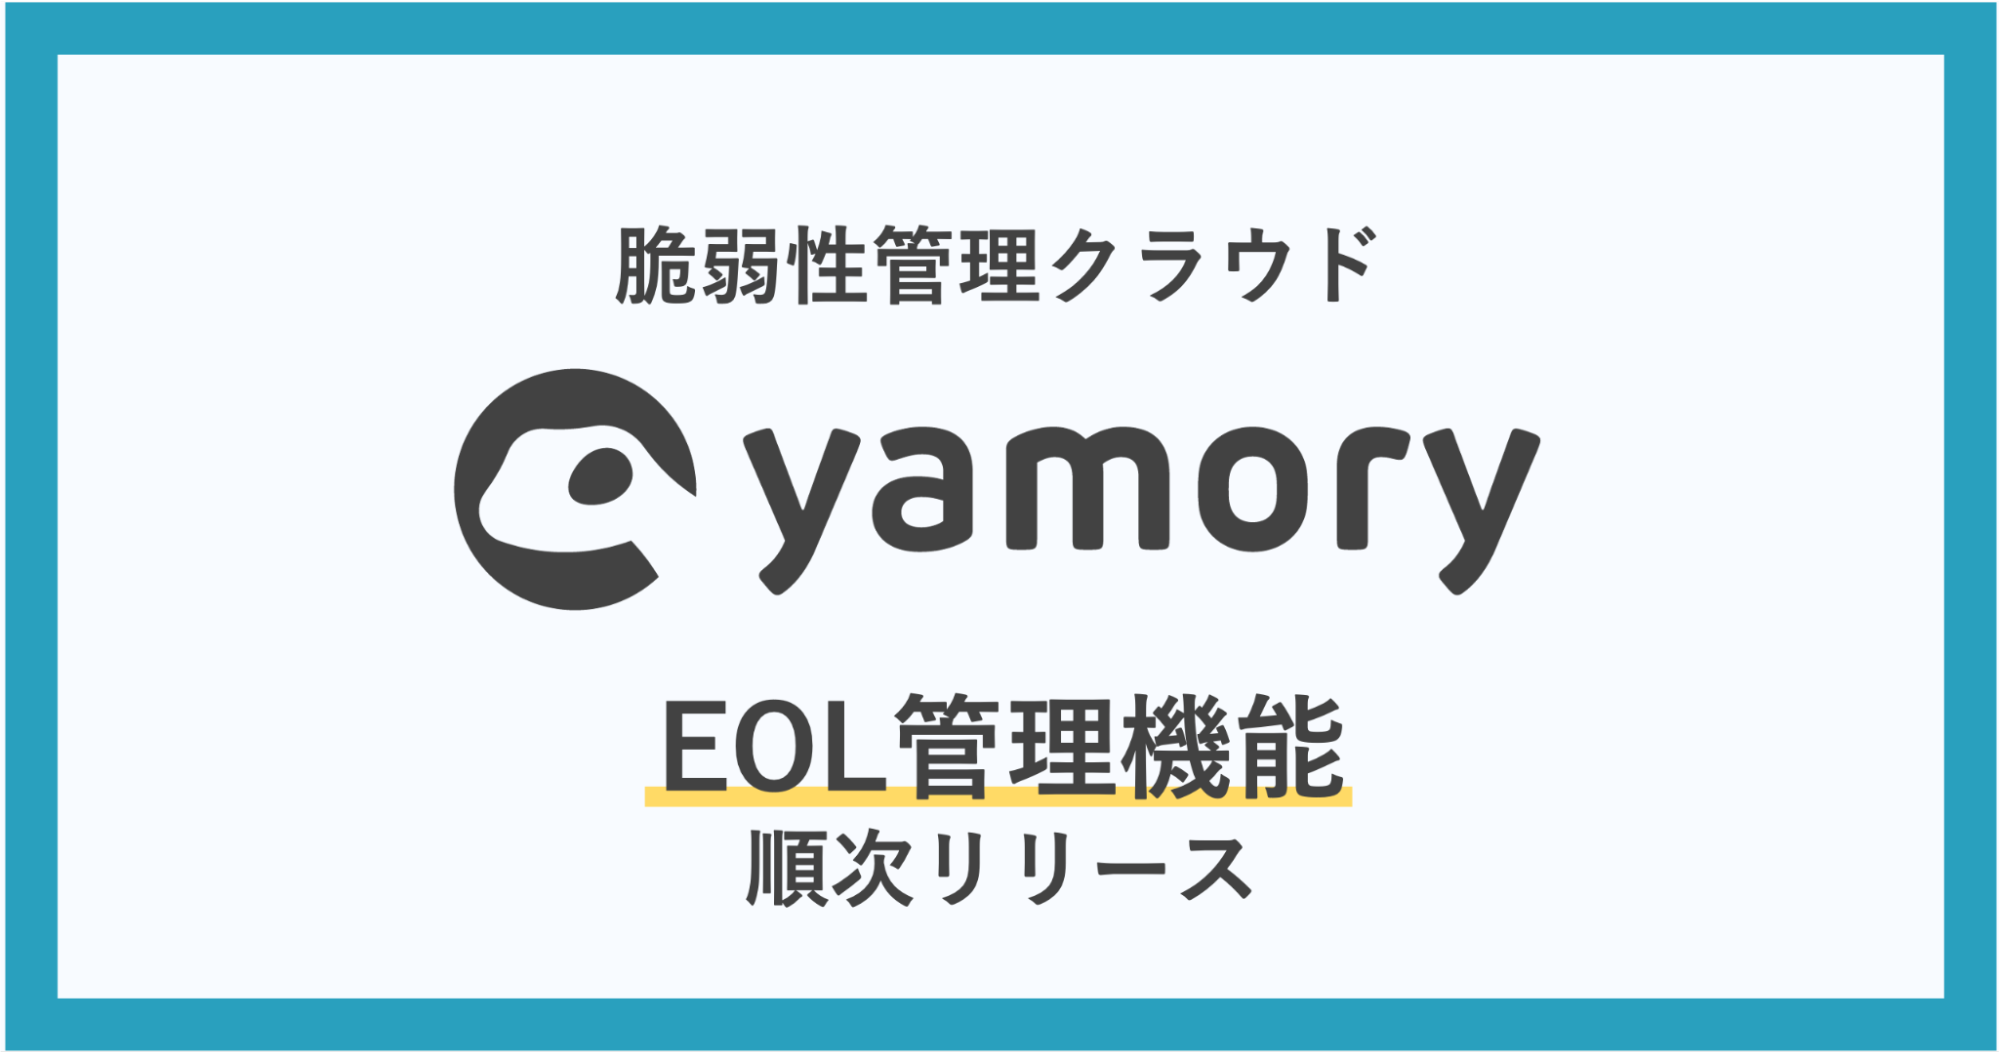 脆弱性管理クラウド「yamory」、EOL管理機能を順次リリース